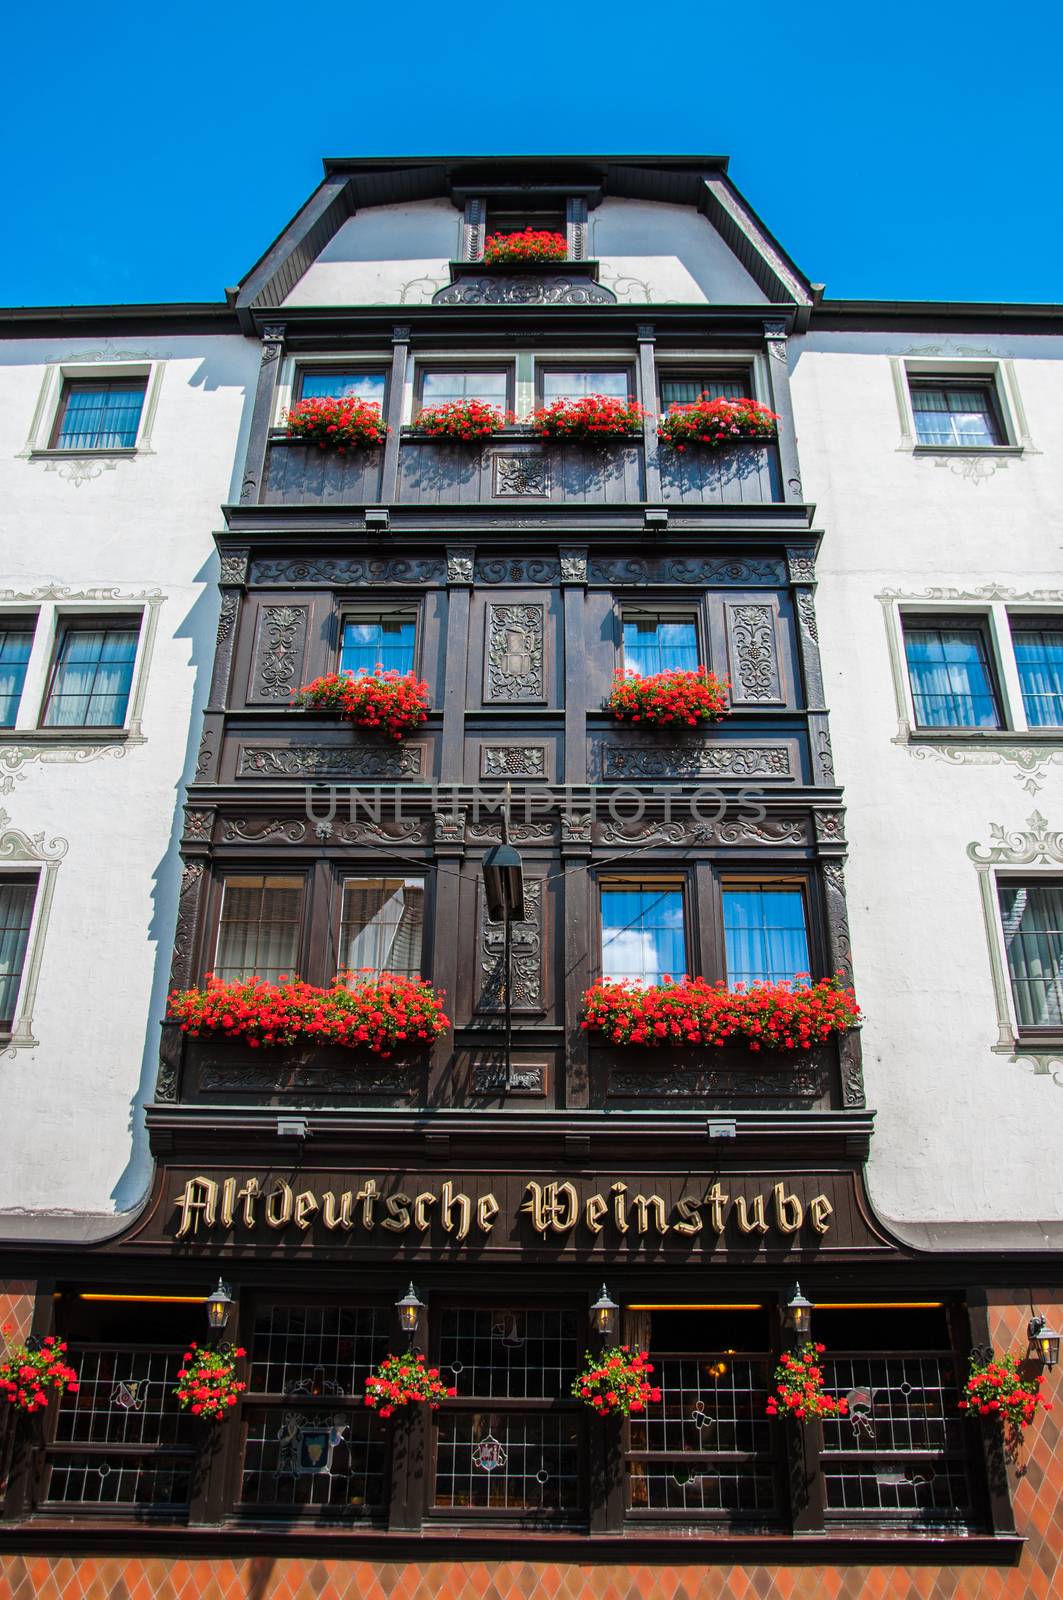 Balkons with flowers in Hotel Altdeutsche Weinstube, Ruedesheim, by Eagle2308